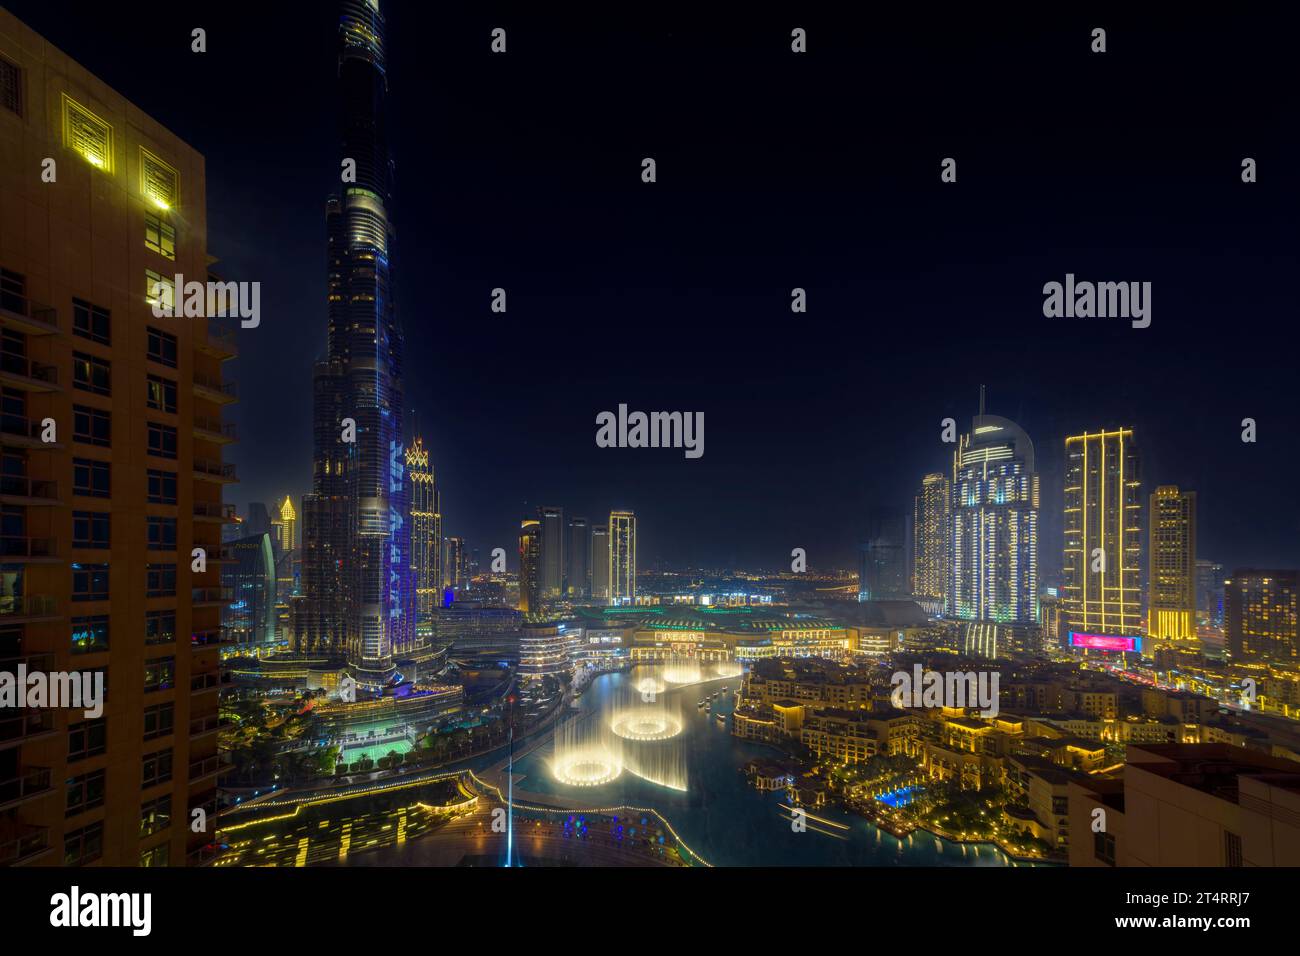 Vue aérienne en soirée à grand angle du centre-ville de Dubaï, avec le centre commercial Dubai Mall, les boutiques et la fontaine illuminés sous le gratte-ciel Burj Khalifa à Dubaï Émirats arabes Unis. Banque D'Images